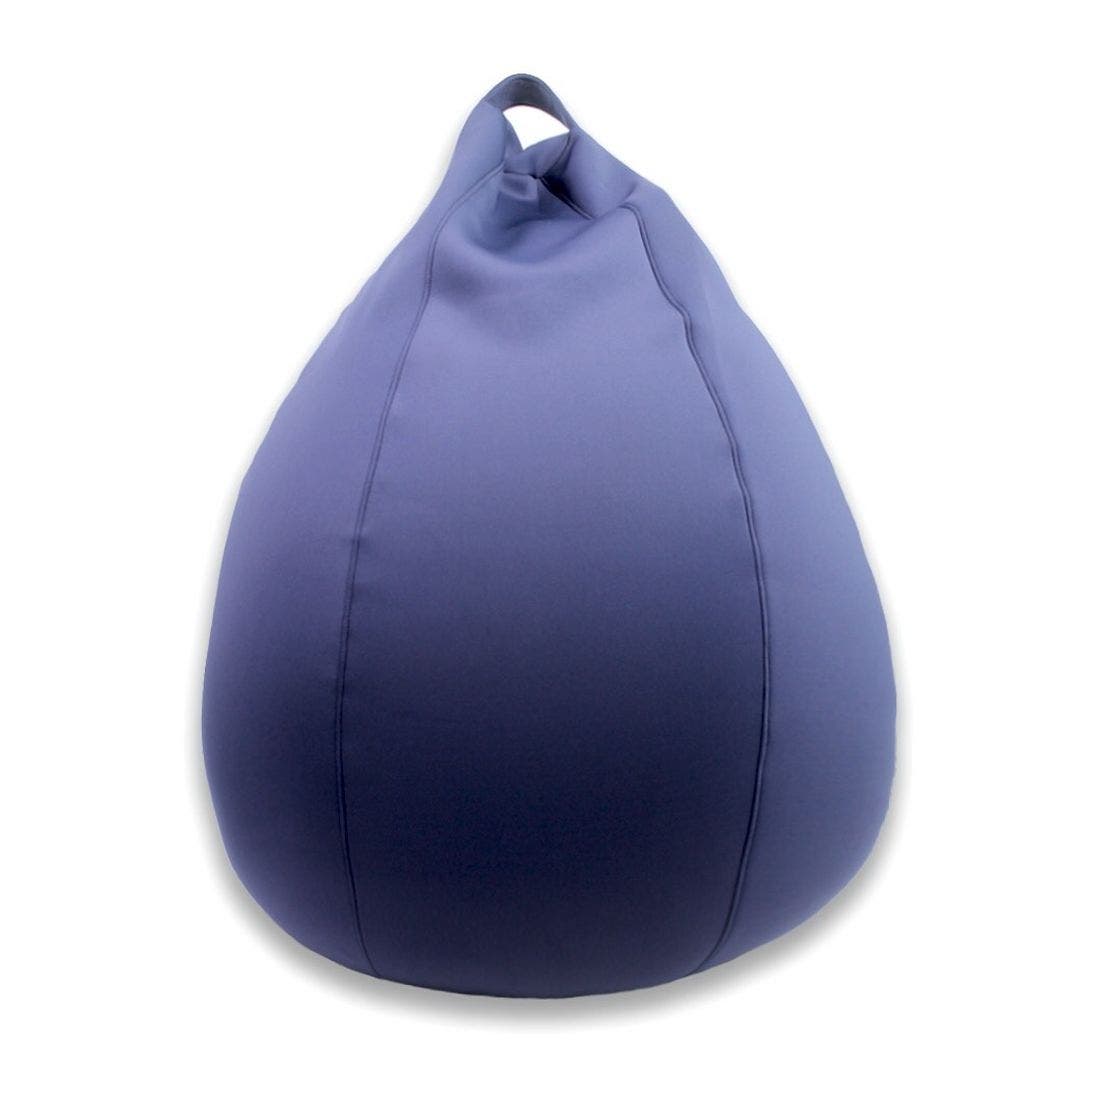 โซฟา Aneestyle รุ่น Aqua bean bag (ทรงหยดน้ำ สีน้ำเงิน) -ANEESTYLE